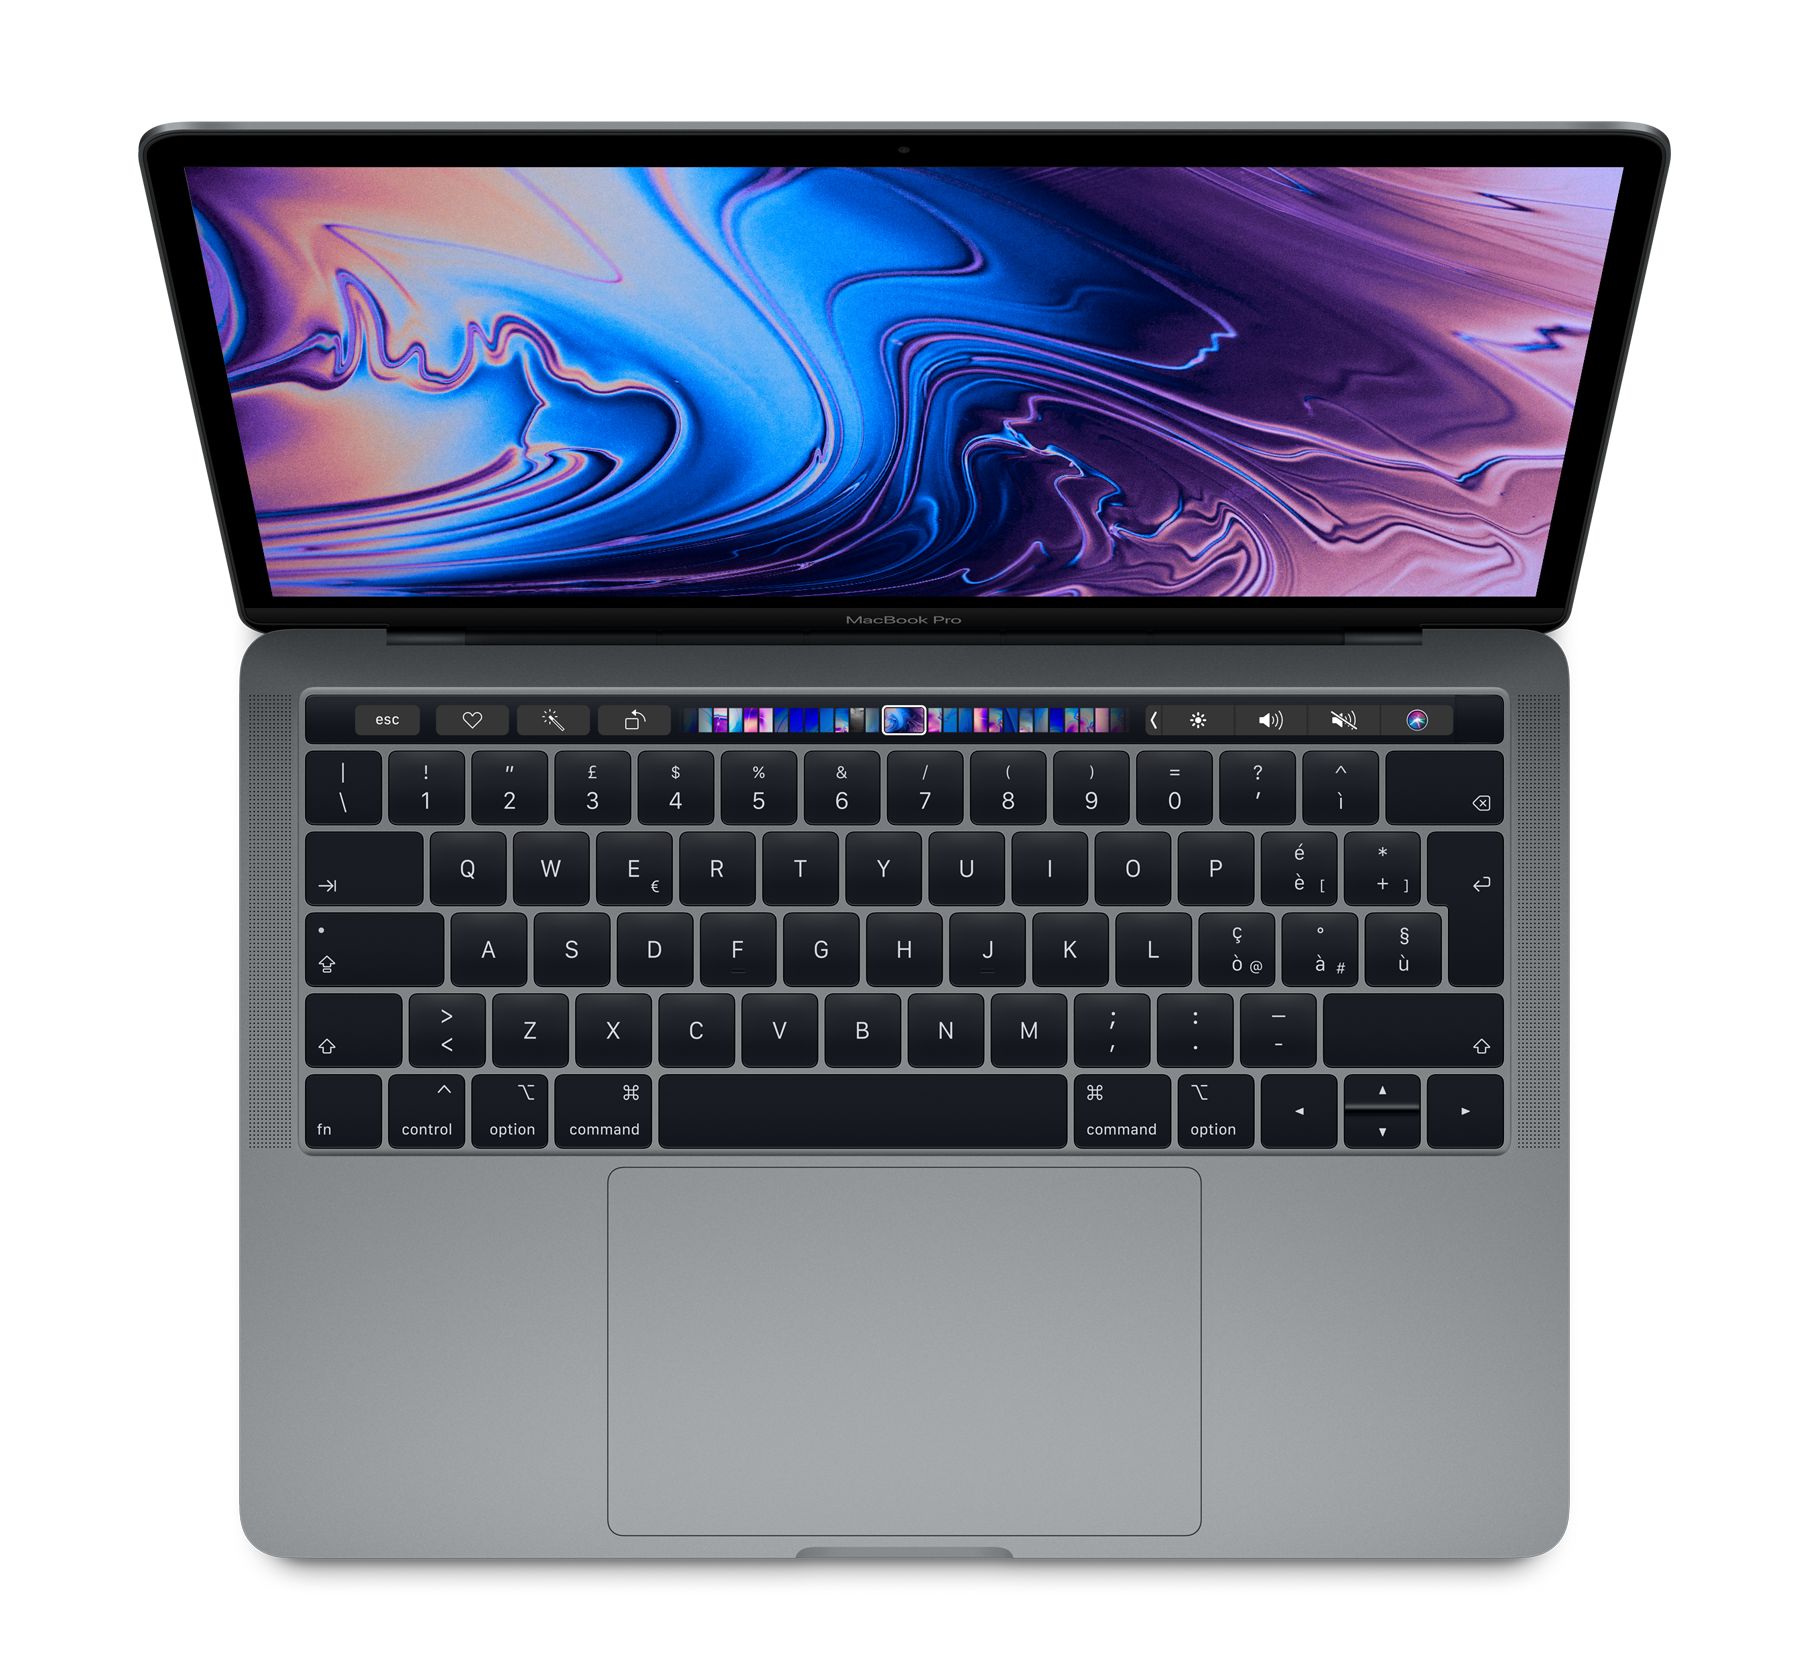 Immagine pubblicata in relazione al seguente contenuto: Apple dovrebbe lanciare i nuovi portatili MacBook Pro da 16-inch a settembre | Nome immagine: news29822_Apple-mac-Book-Pro_1.jpg